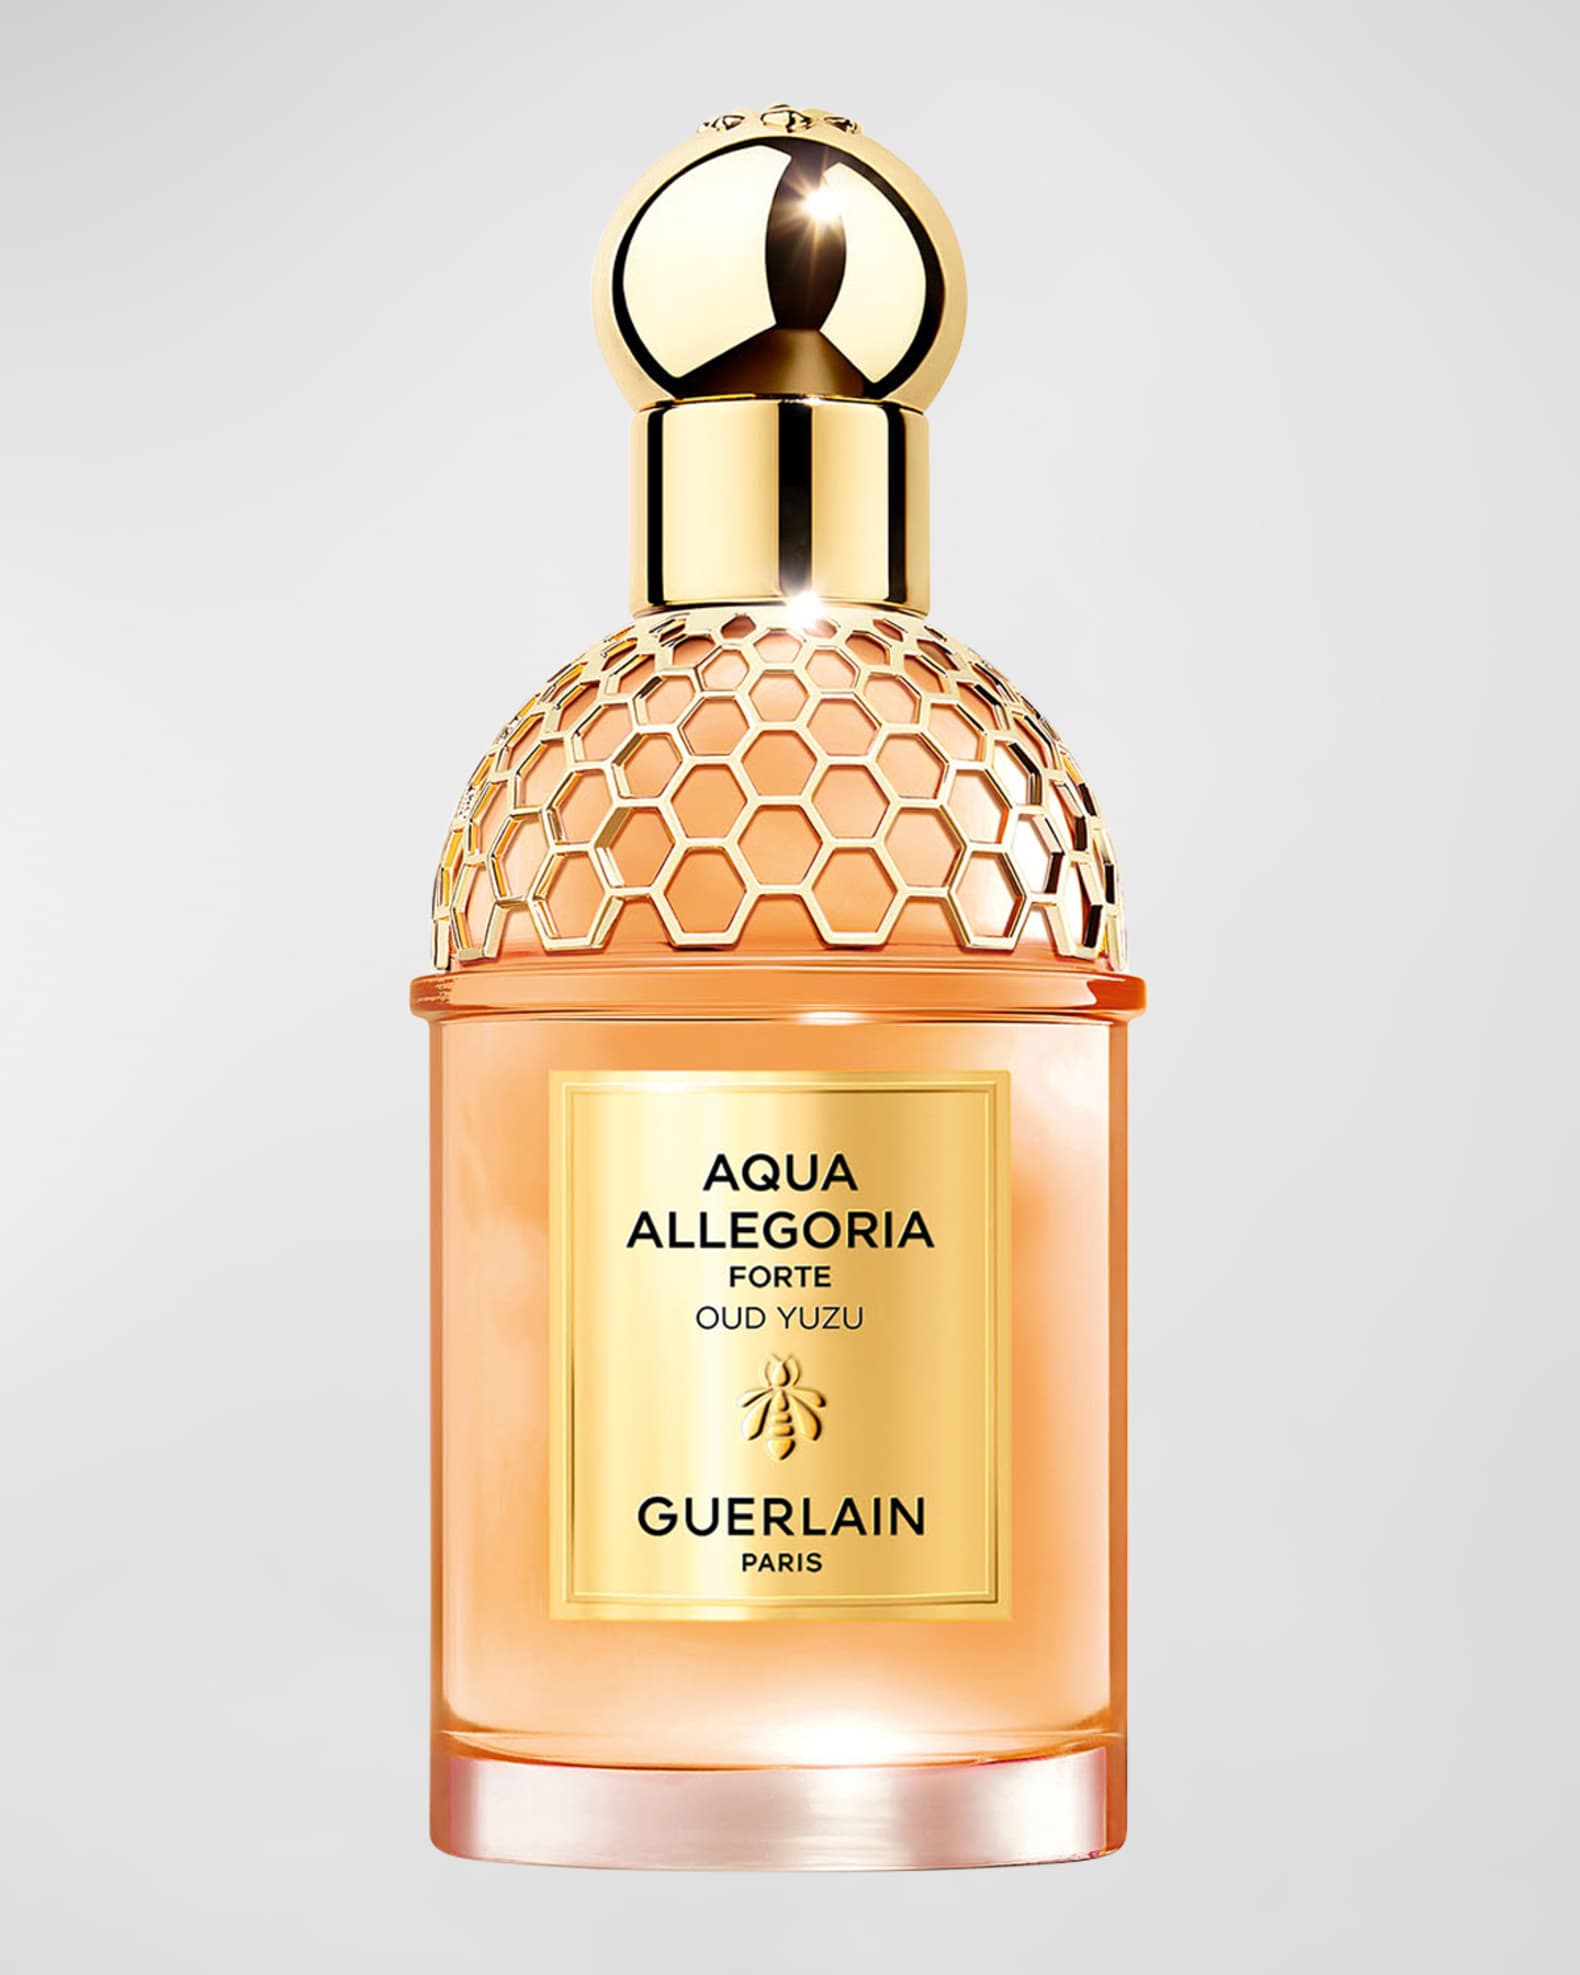 Guerlain Aqua Allegoria Forte Oud Yuzu Eau de Parfum, 2.5 oz.